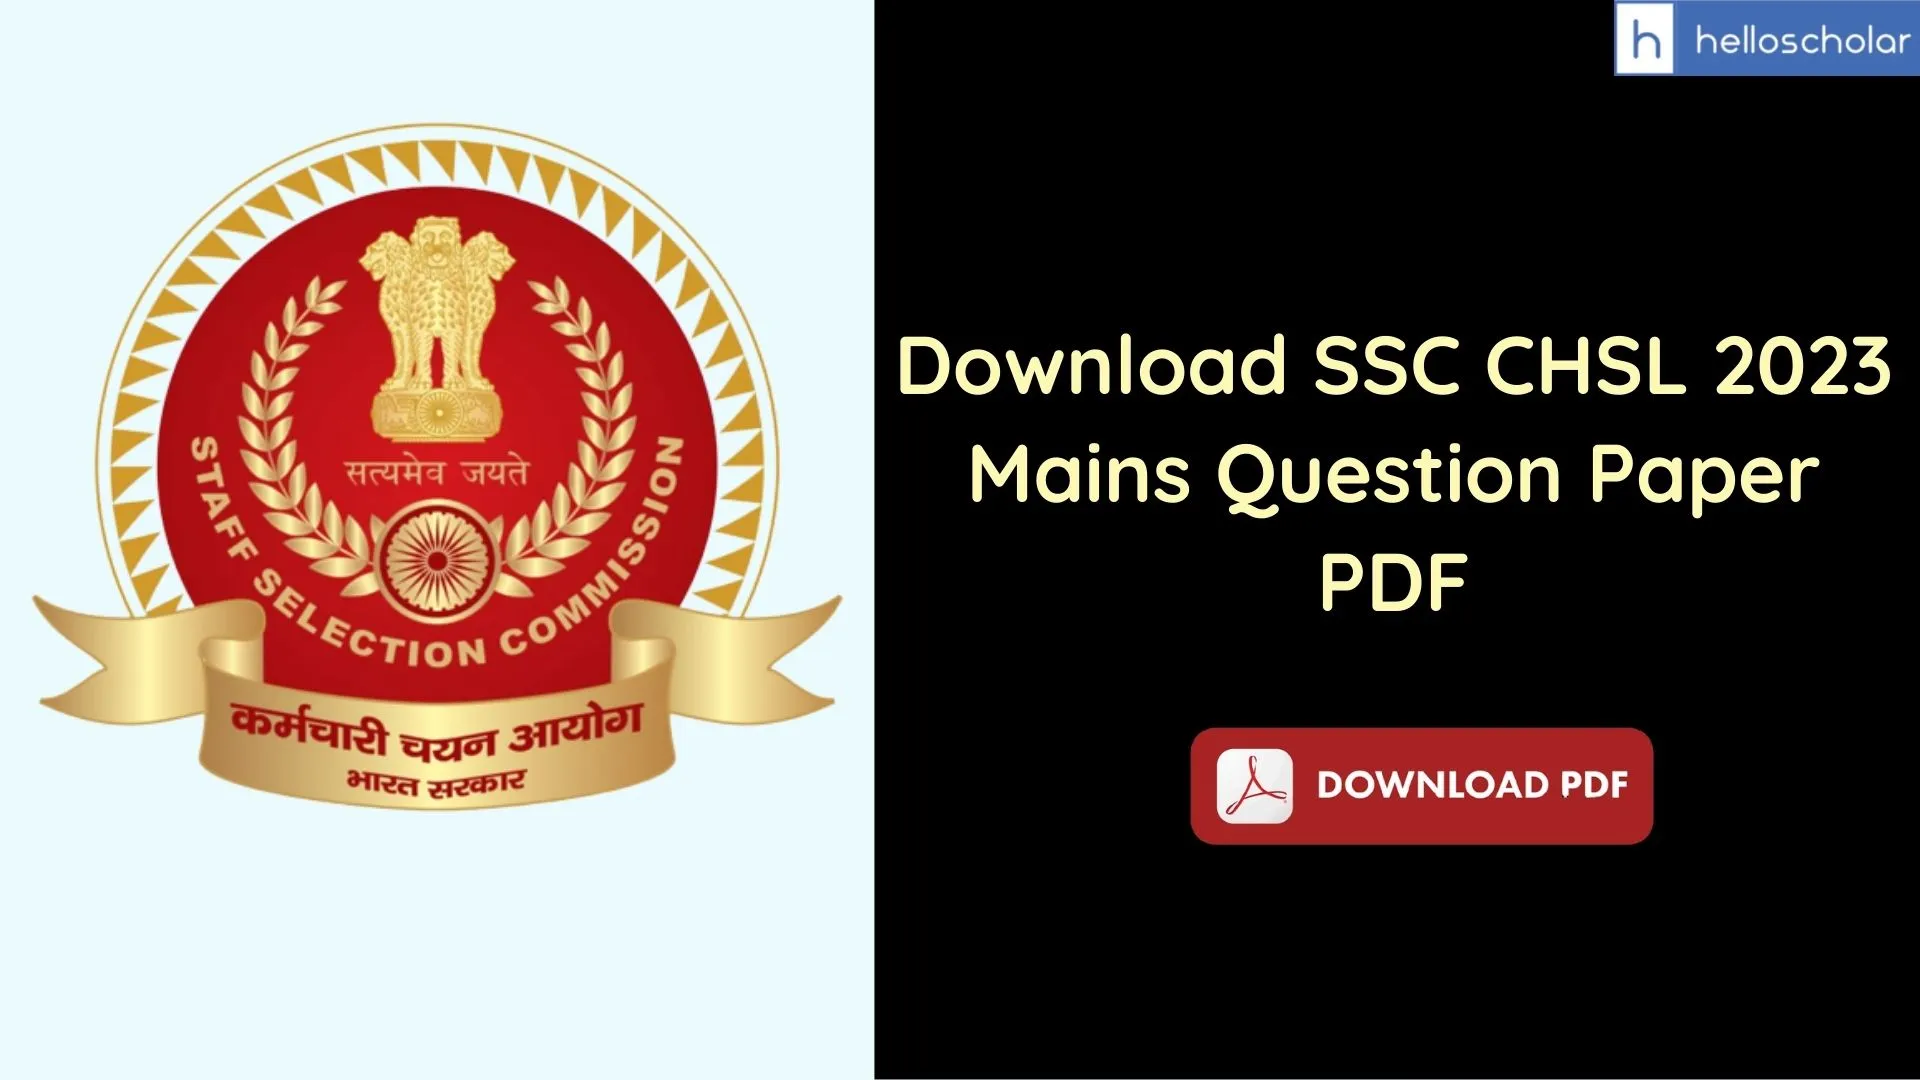 Download SSC CHSL 2023 Mains Question Paper PDF